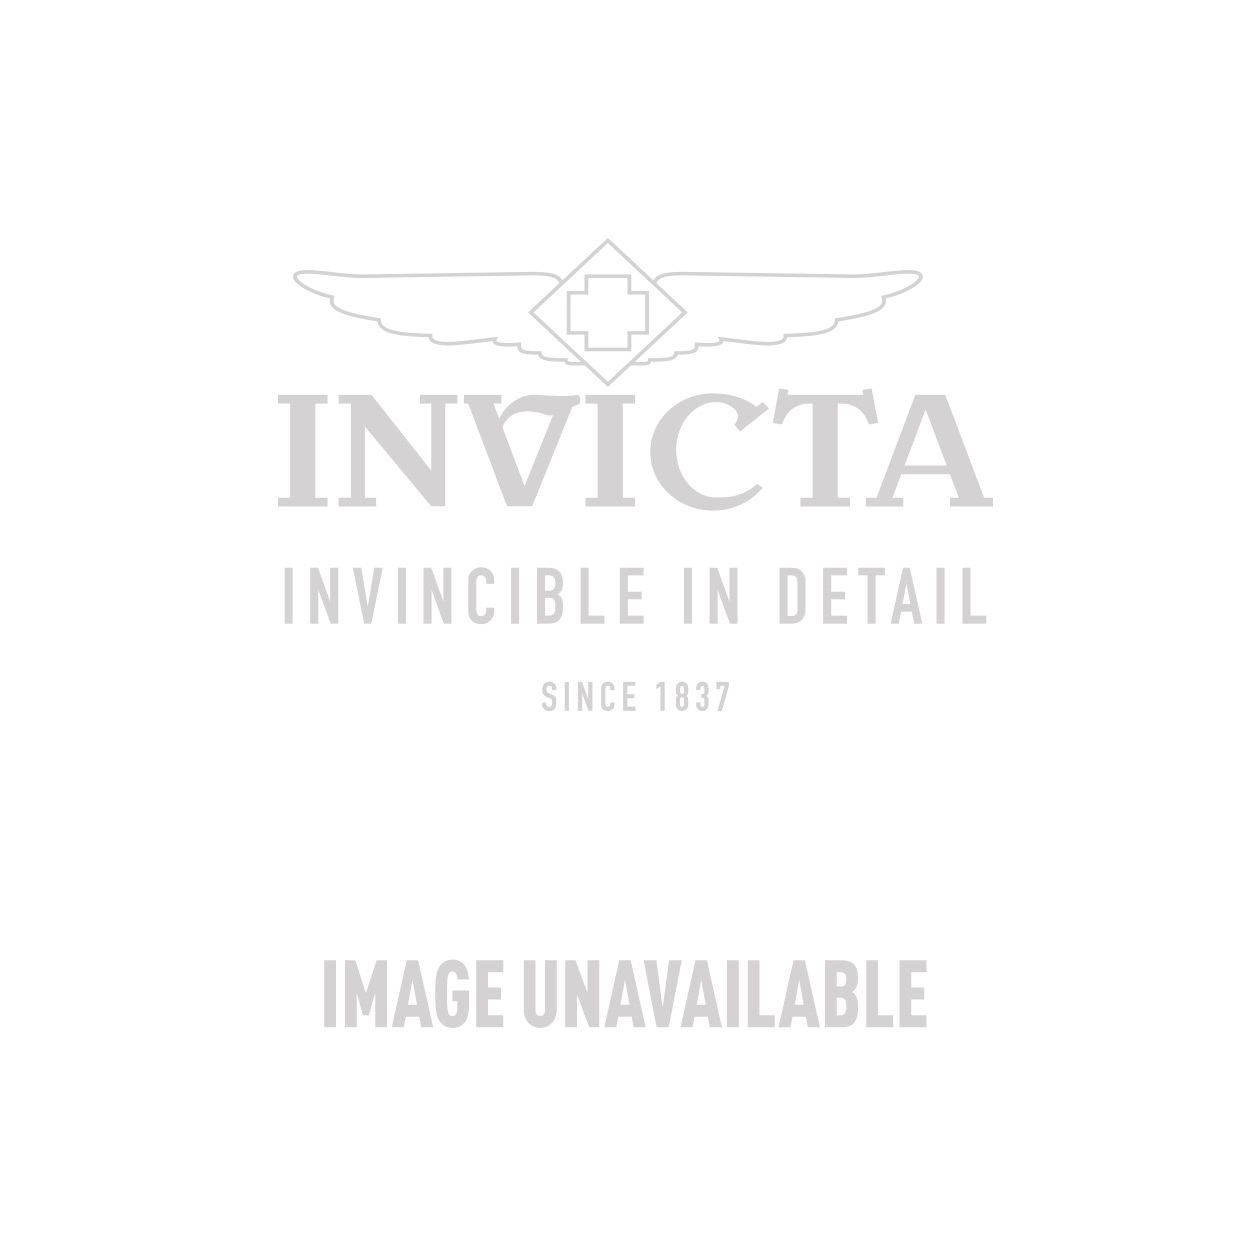 Invicta Speedway Quartz Watch - Gold, Stainless Steel case with Steel, Gold tone Stainless Steel band - Model 9224